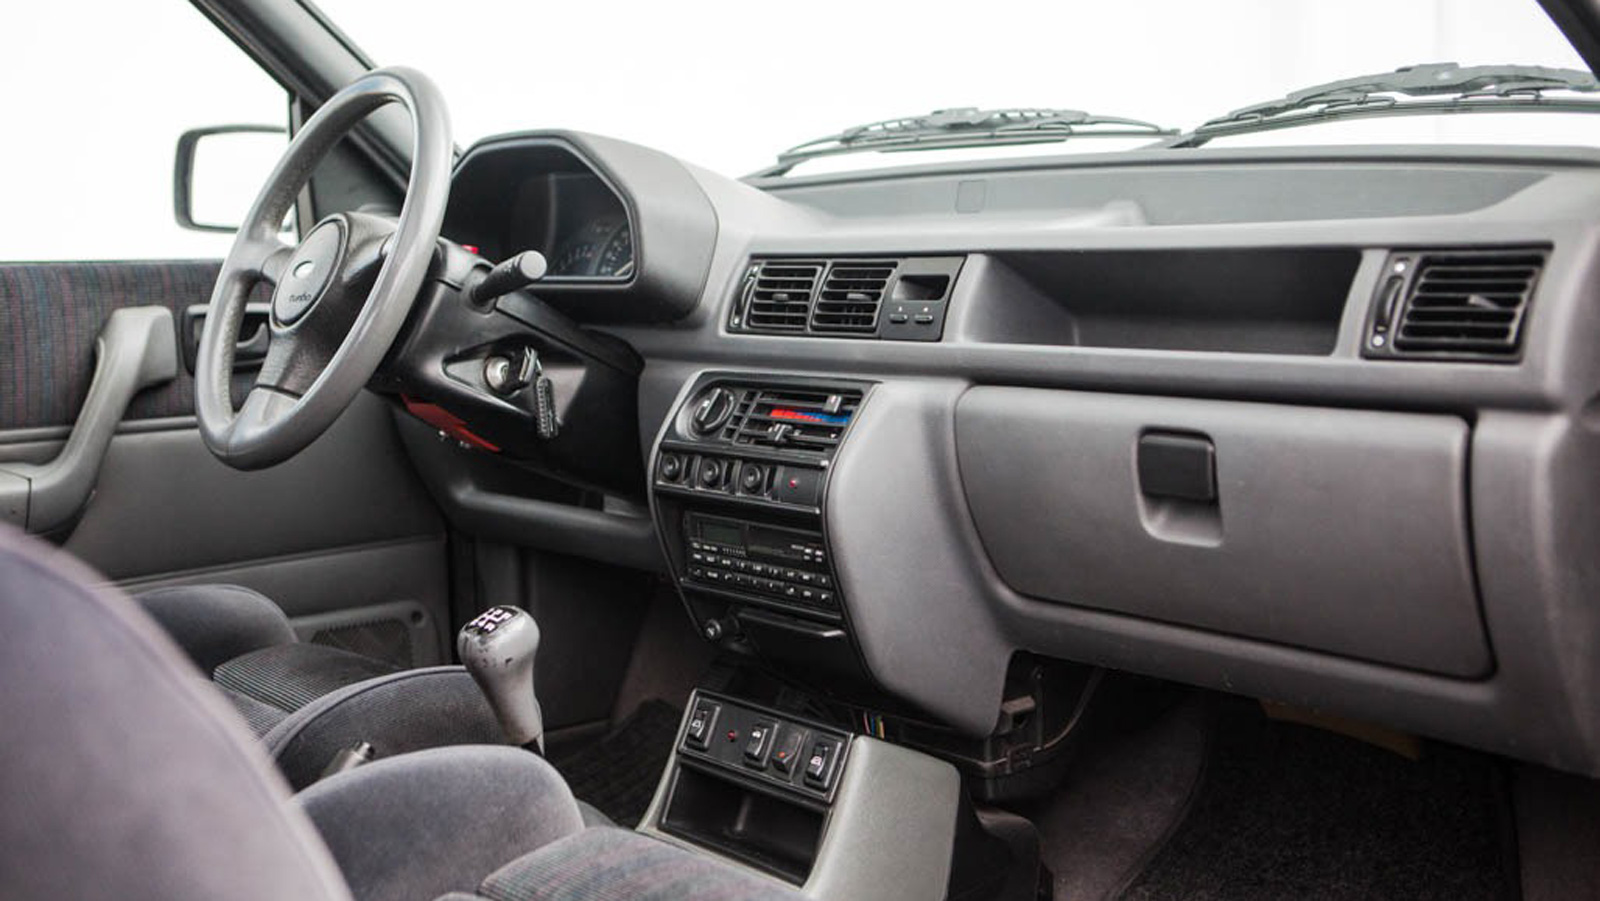 Ford Fiesta RS turbo: Το πρώτο τουρμπάτο Fiesta